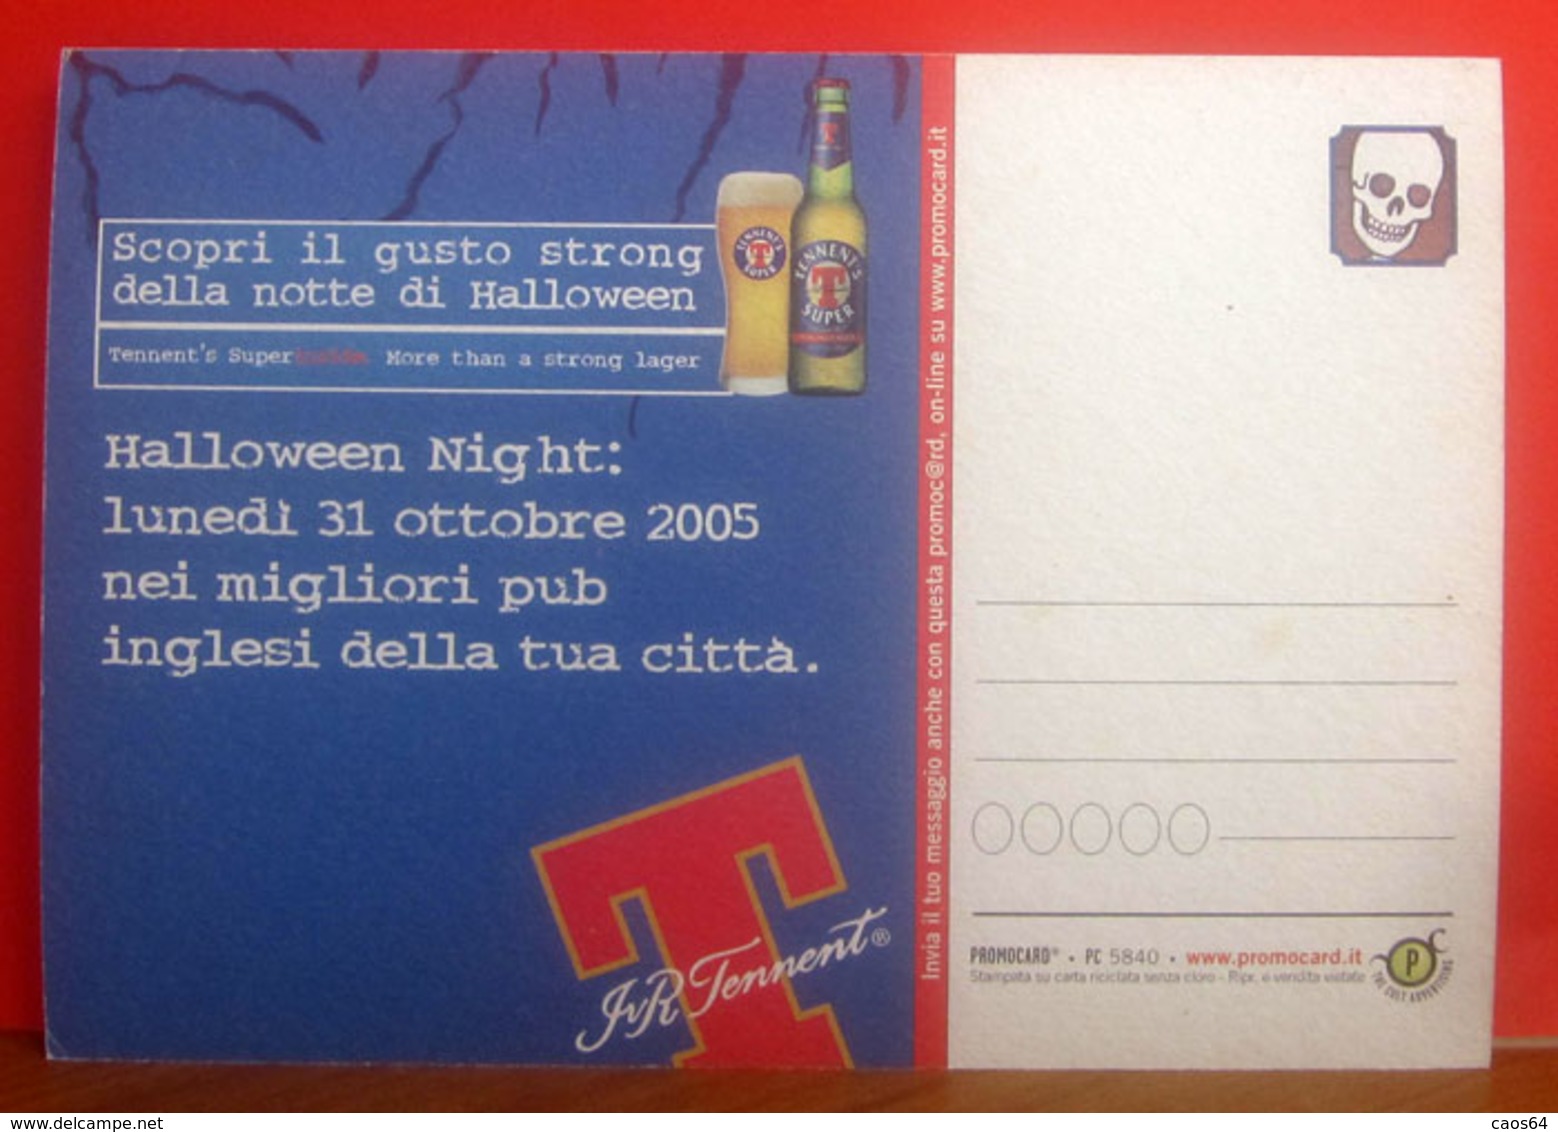 CENERENTOLA Halloween Night 2005 Birra Tennent's  Super Pubblicità Cartolina Promocard 5840 - Pubblicitari